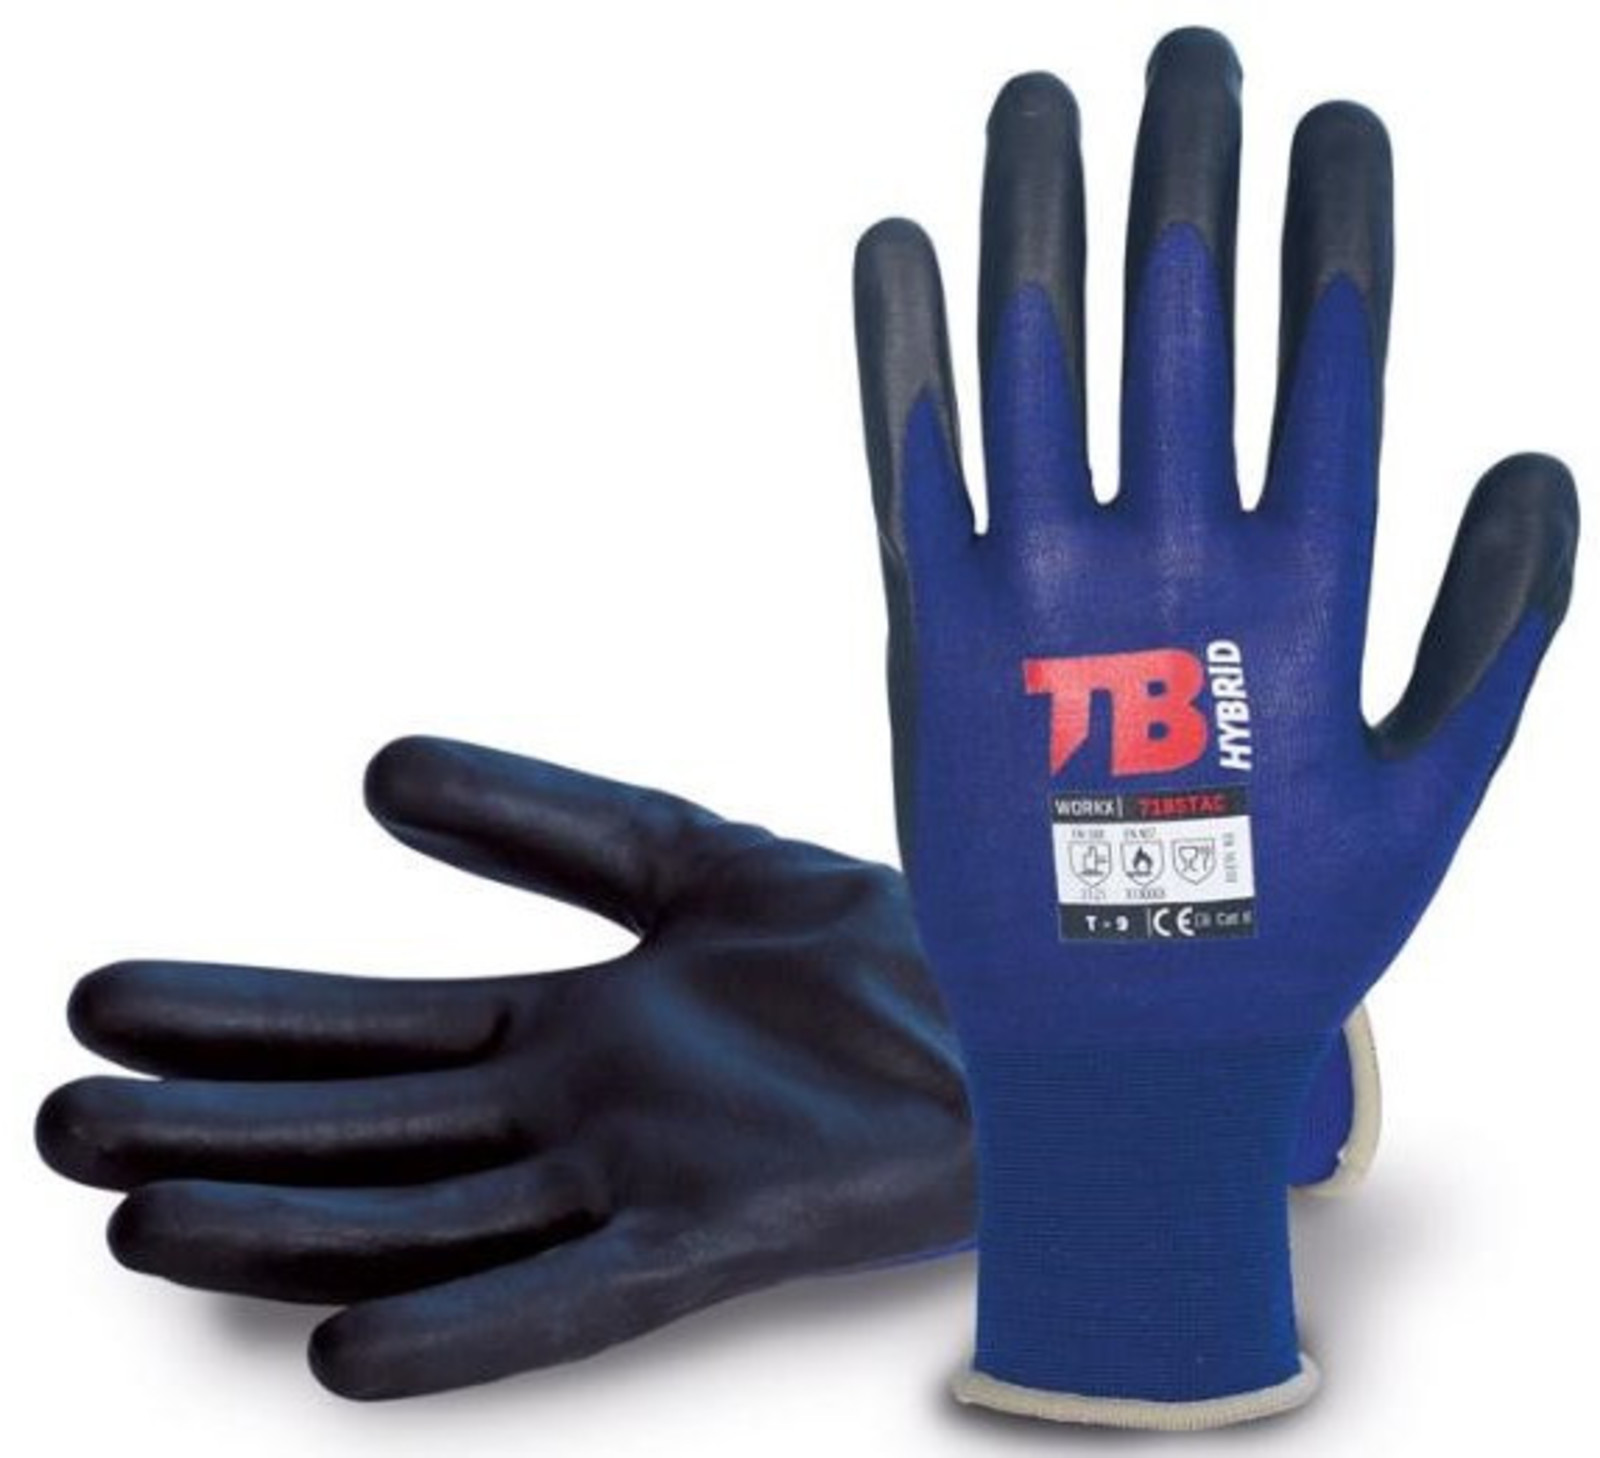 Nylonové rukavice TB 718 Stac - veľkosť: 8/M